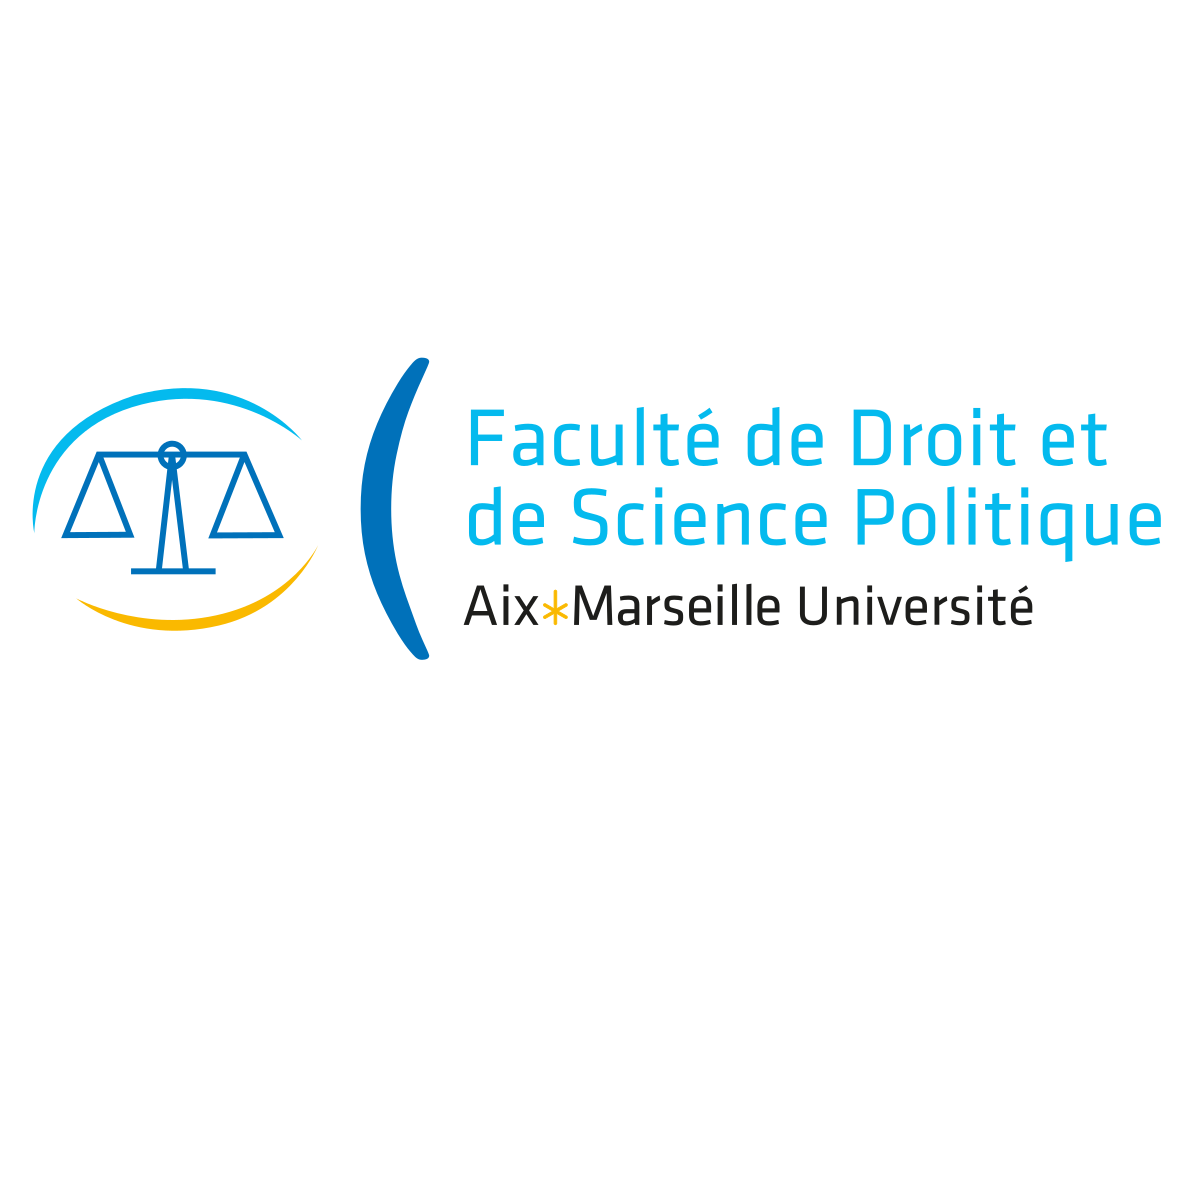 Aix-Marseille Université (partner) 